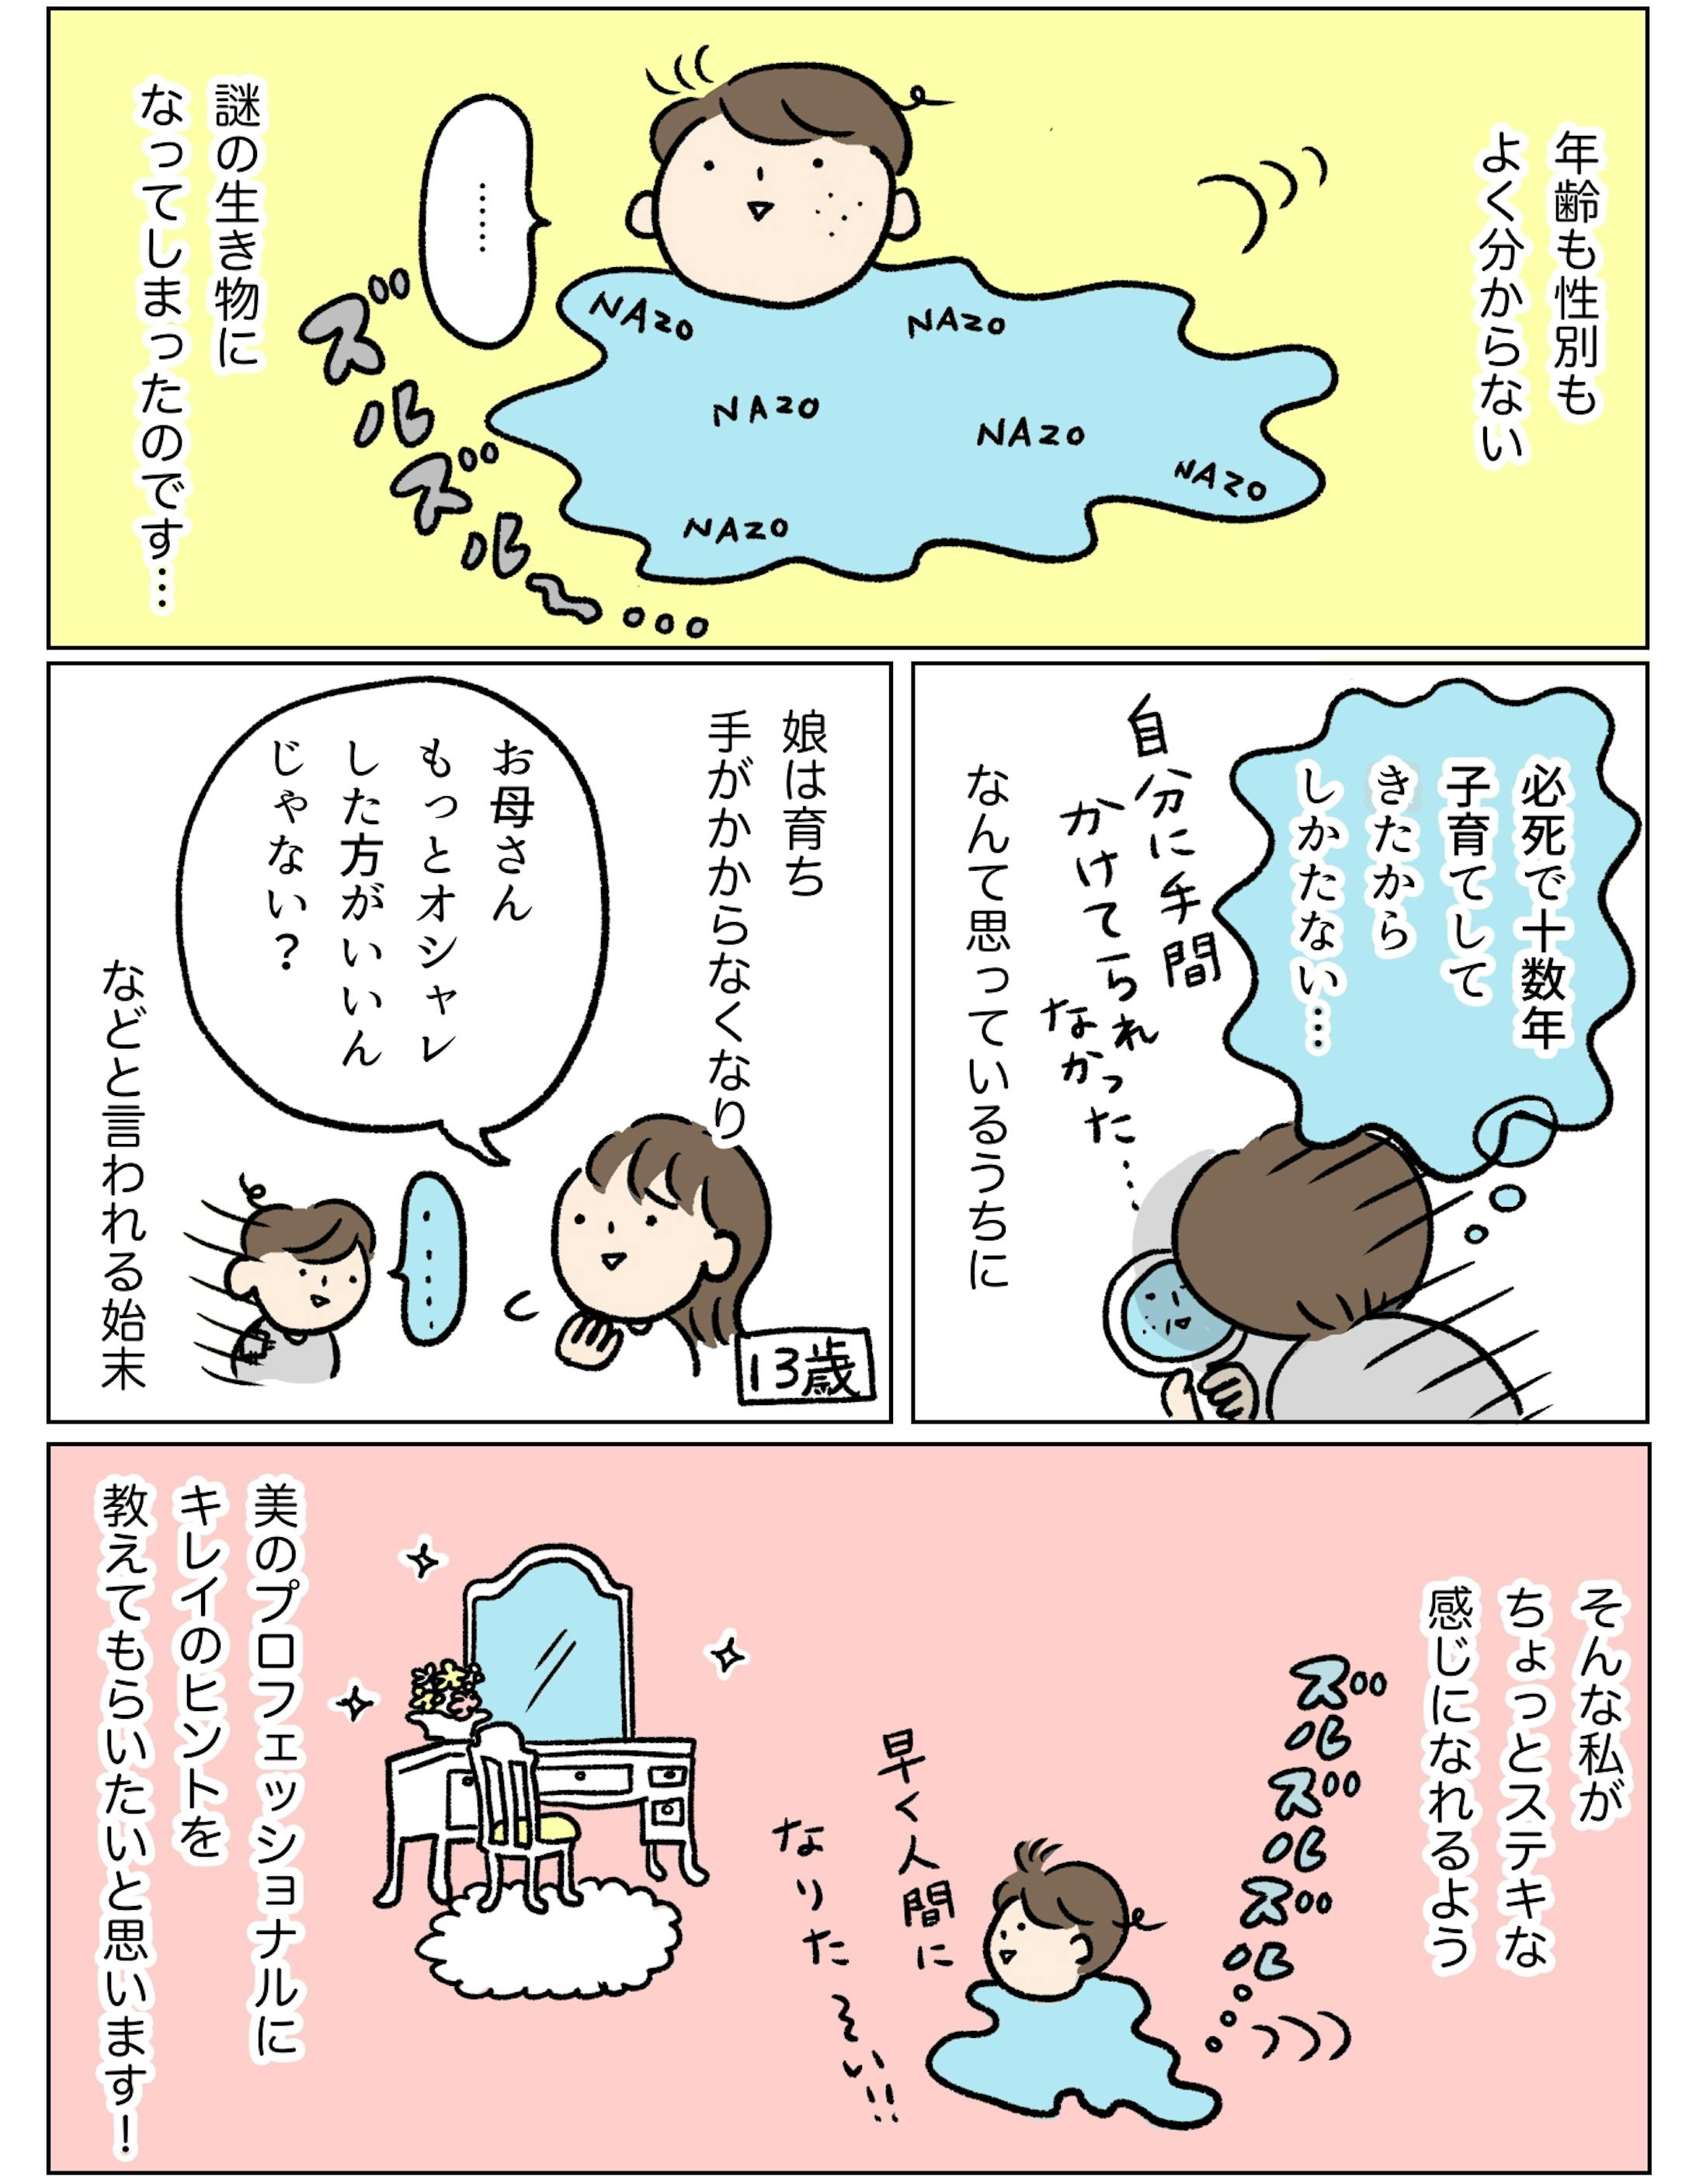 【kodomoe web】美容漫画連載 「40代ママのキレイをアップデート」-2